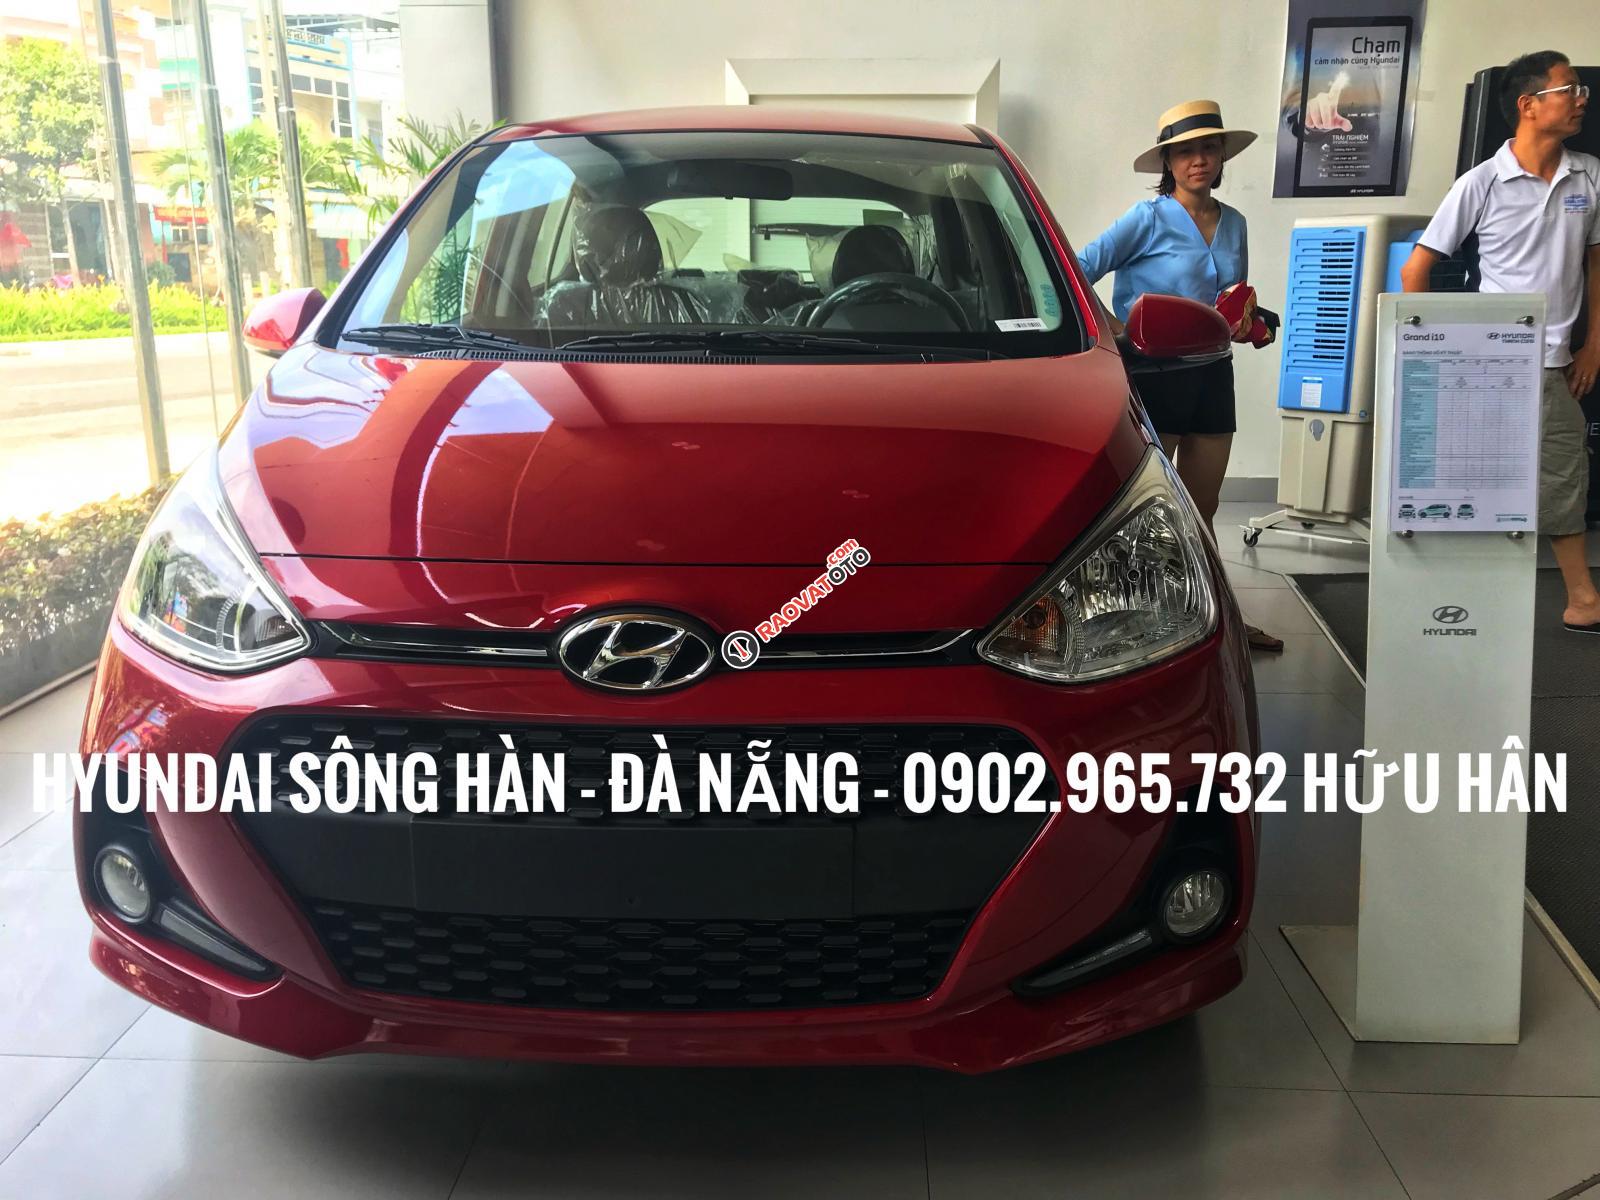 Bán xe Hyundai Grand i10 2019, màu đỏ, giá tốt nhất Đà Nẵng, chỉ cần 150 triệu để nhận xe, LH: 0902.965.732 Hữu Hân-8